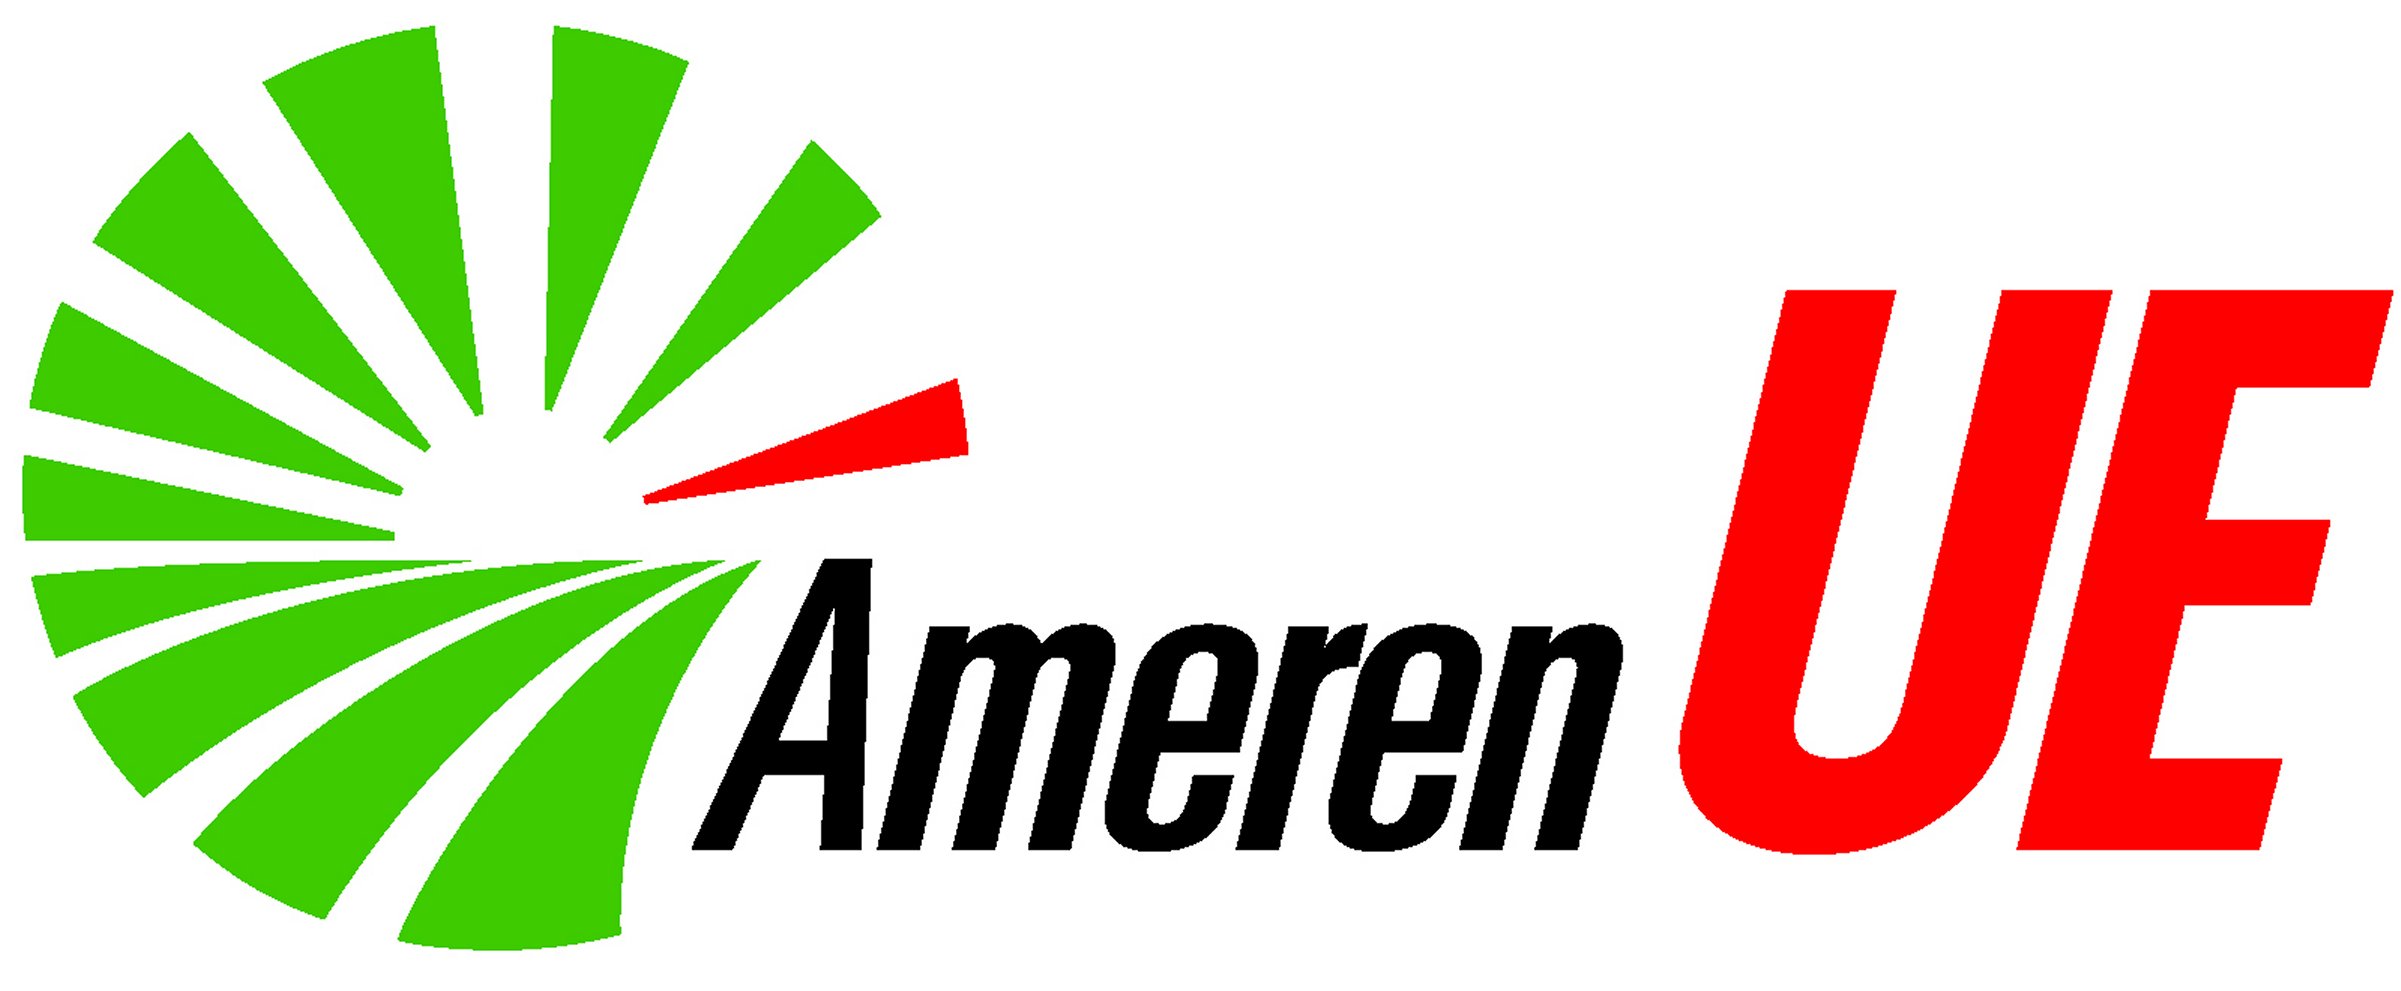 ameren-ue-logo-png-transparent-logo-freepngdesign